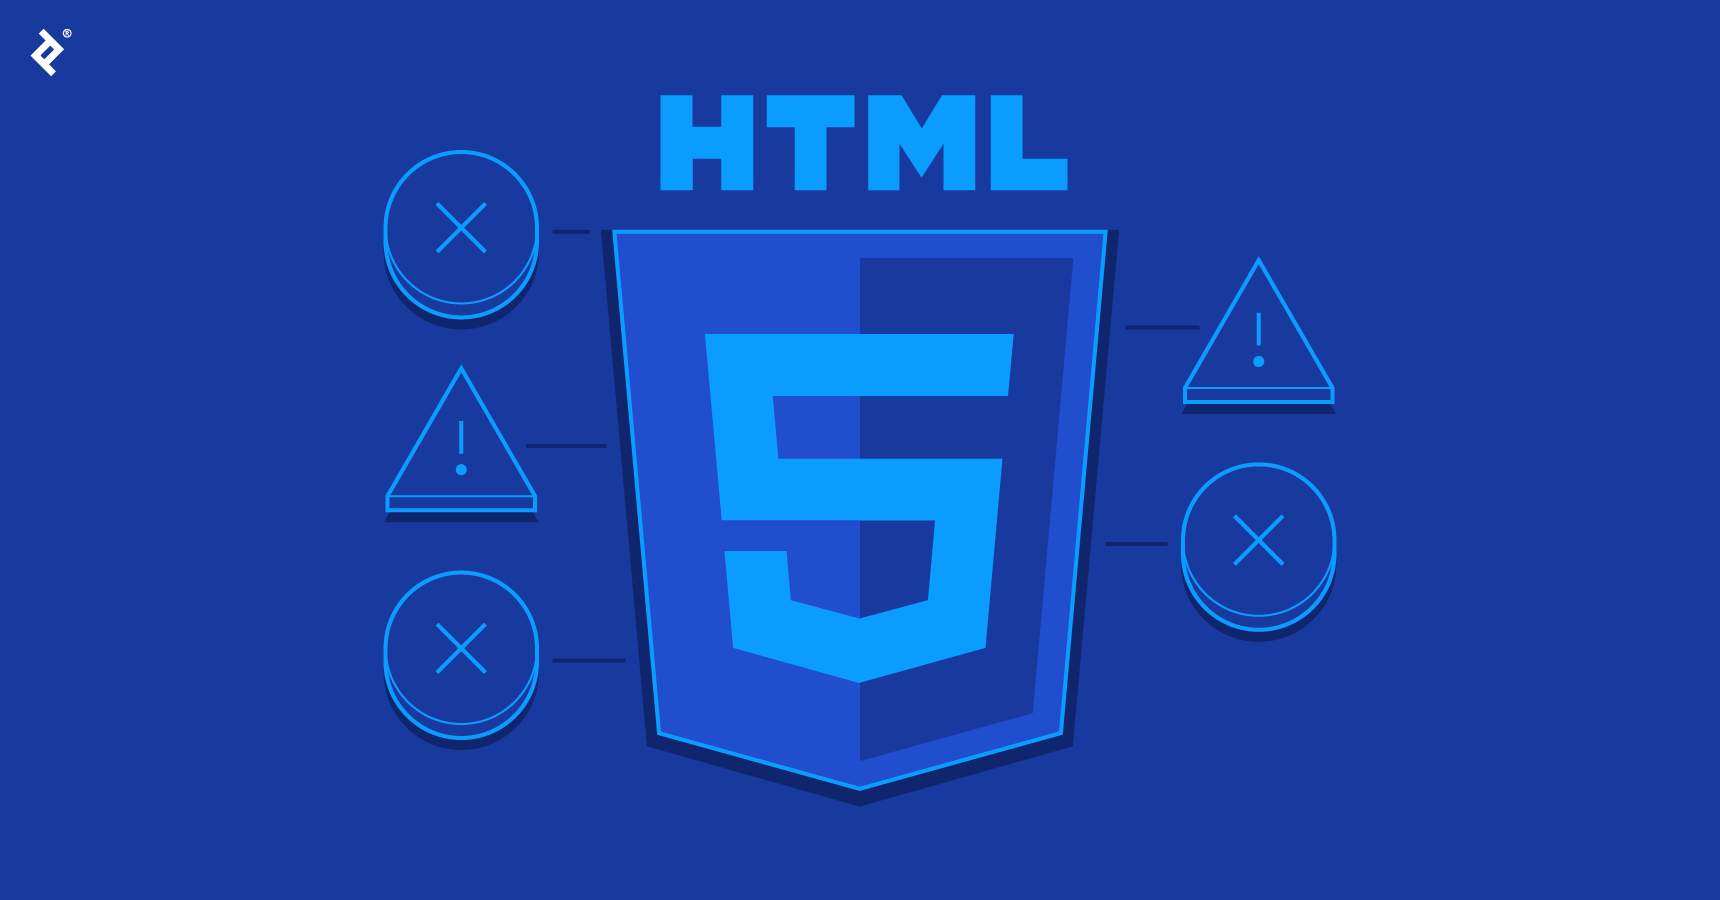 مفهوم HTML5 در تجارت الکترونیک